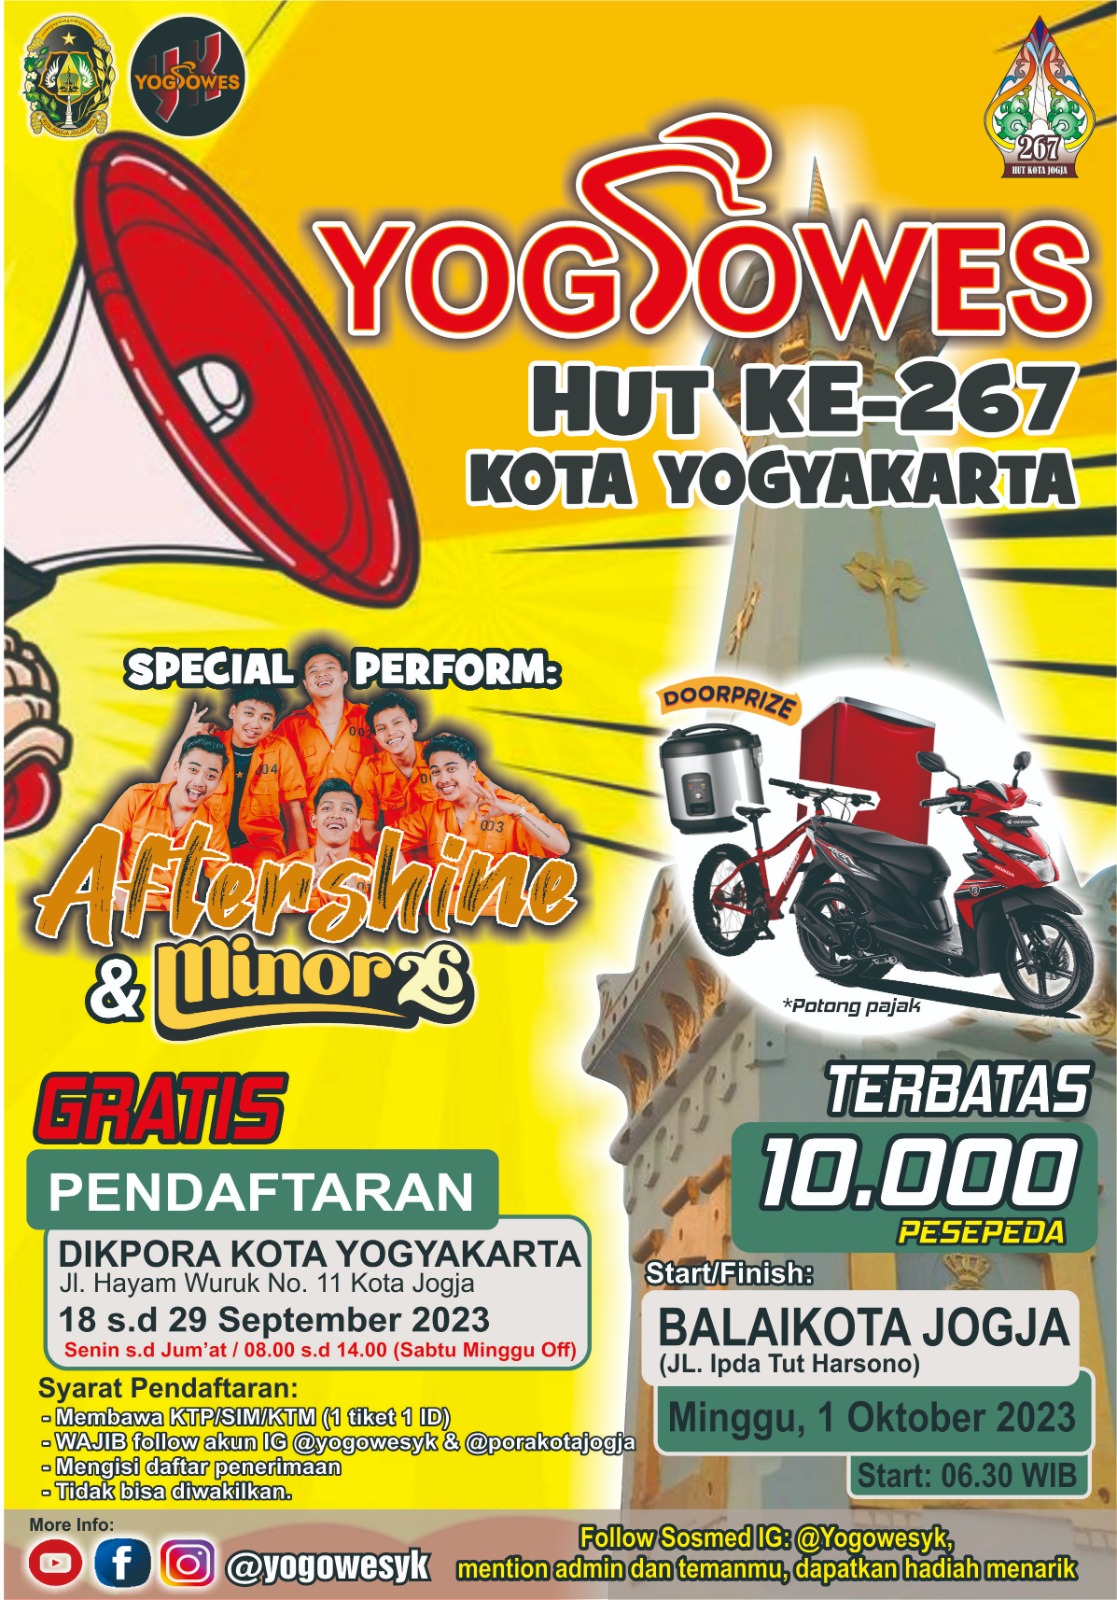 Yoggowes HUT Ke- 267 Kota Yogyakarta